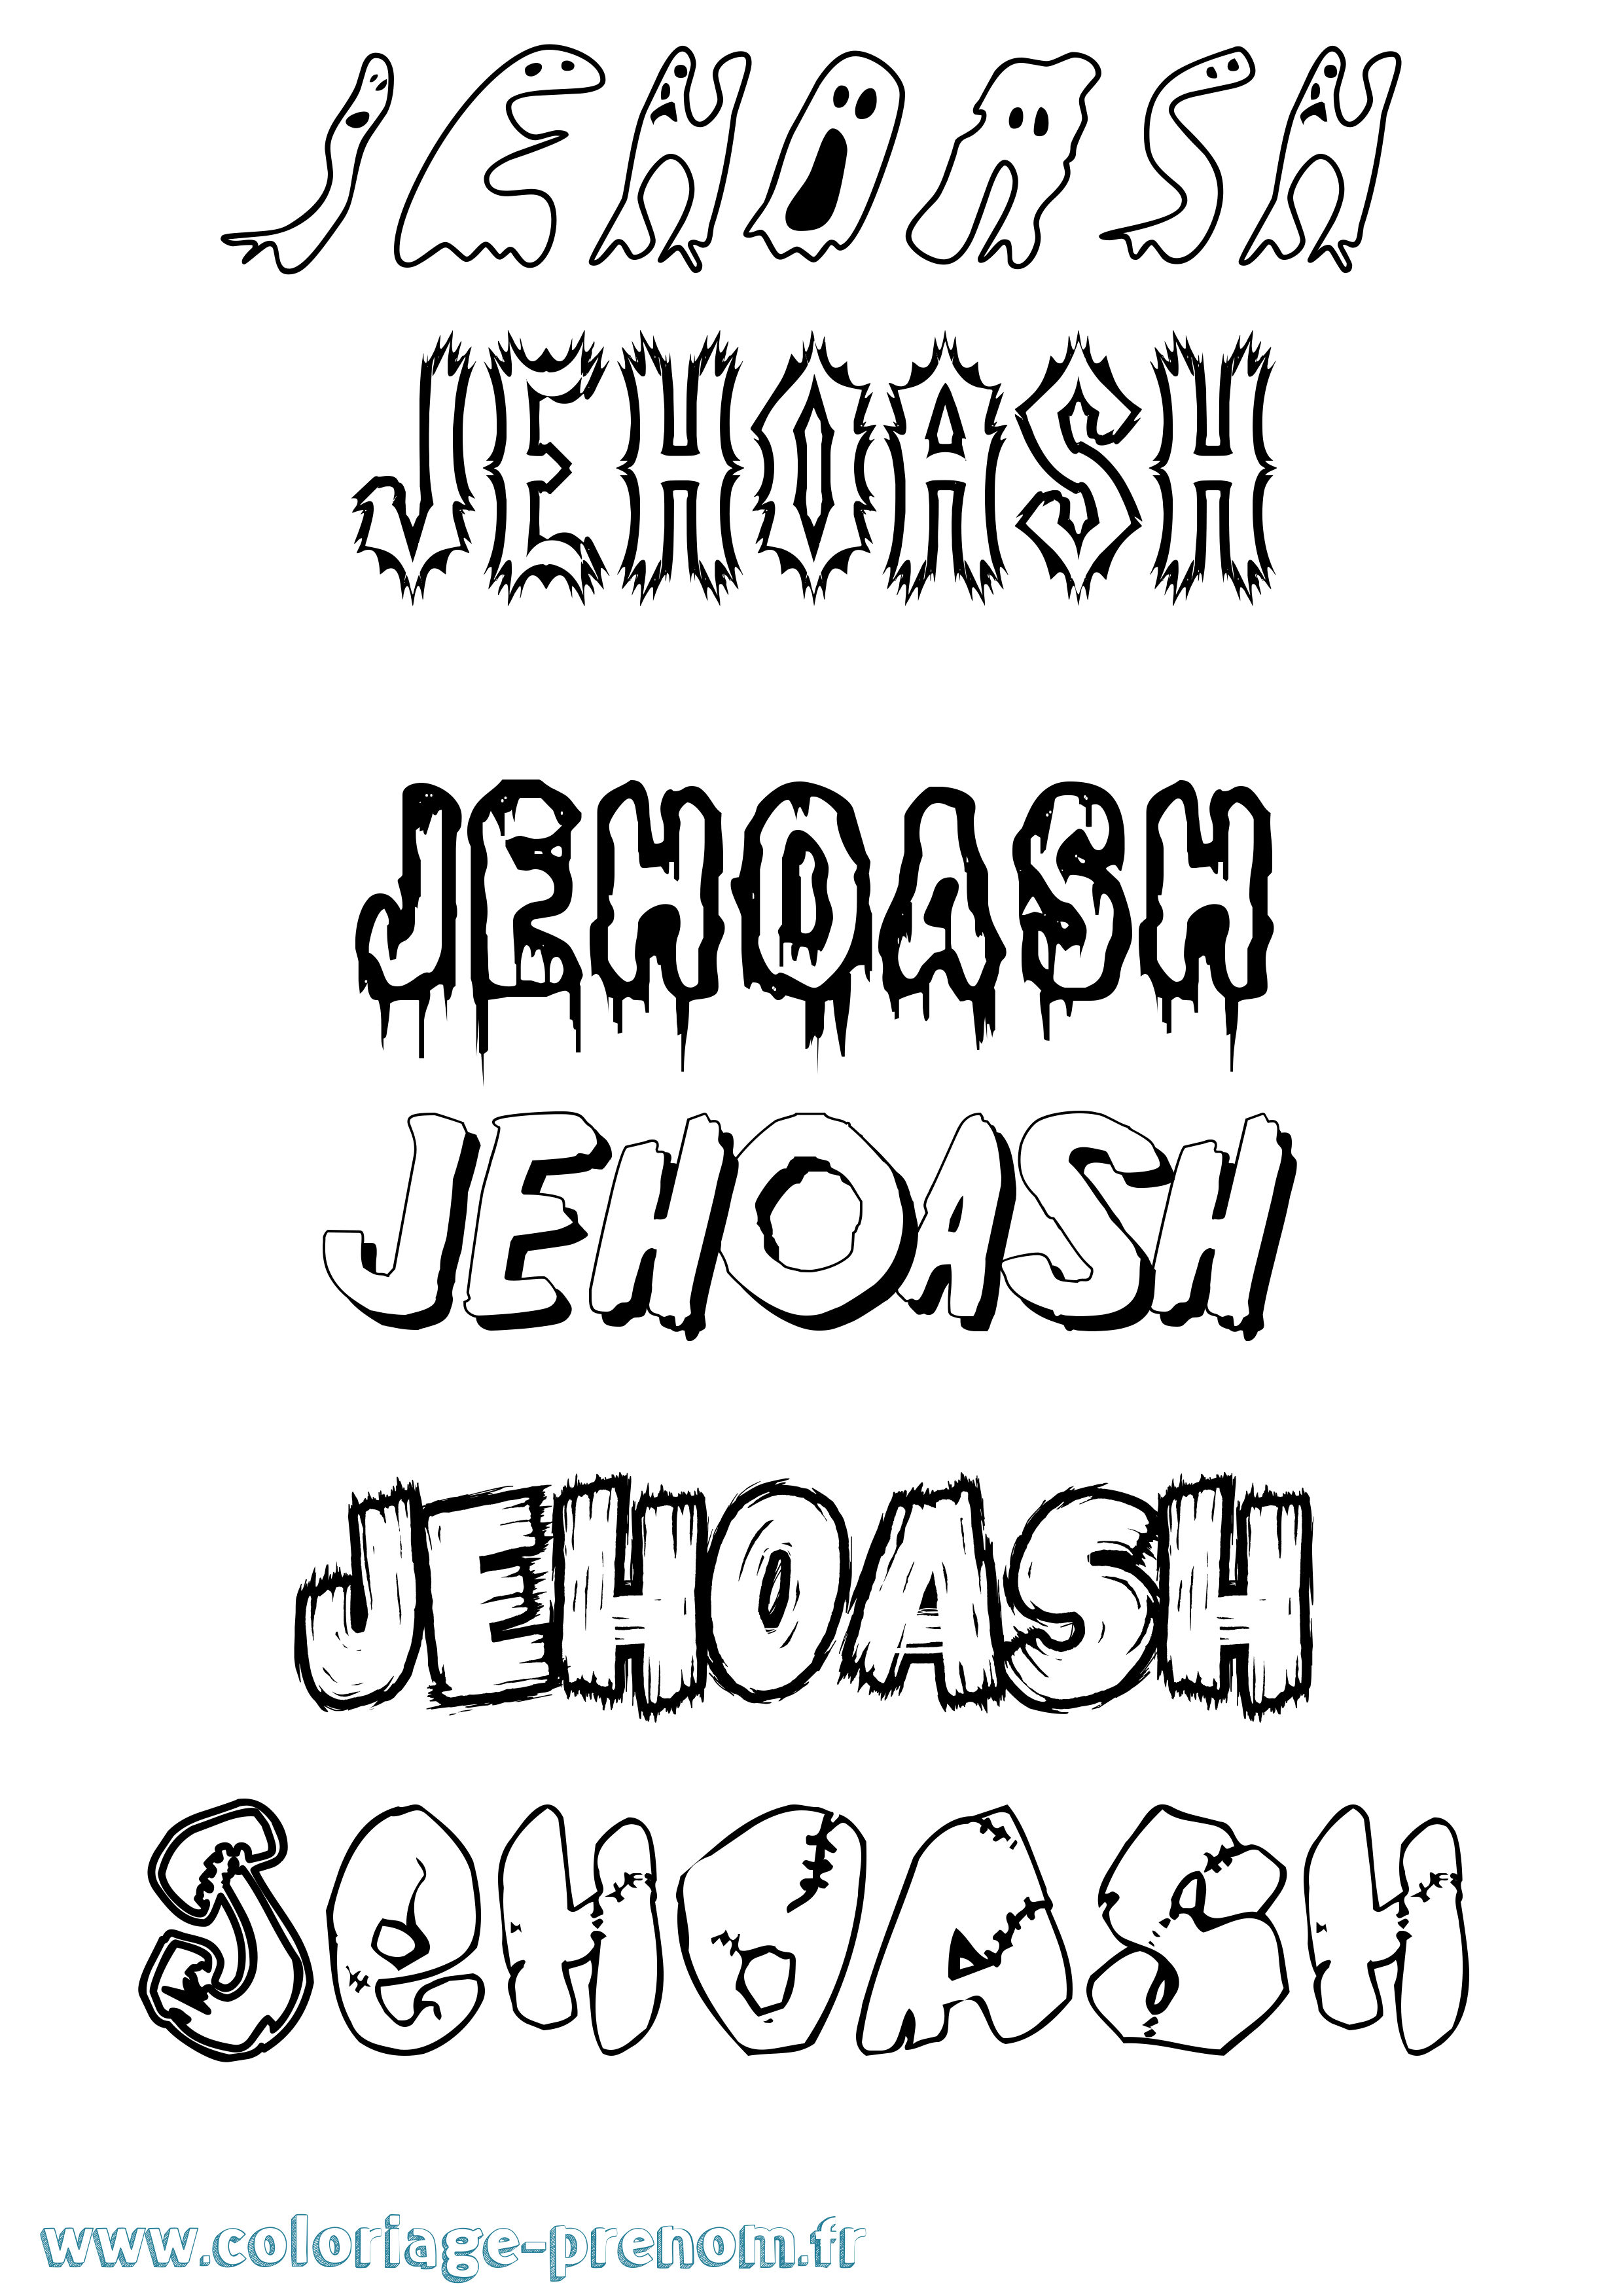 Coloriage prénom Jehoash Frisson